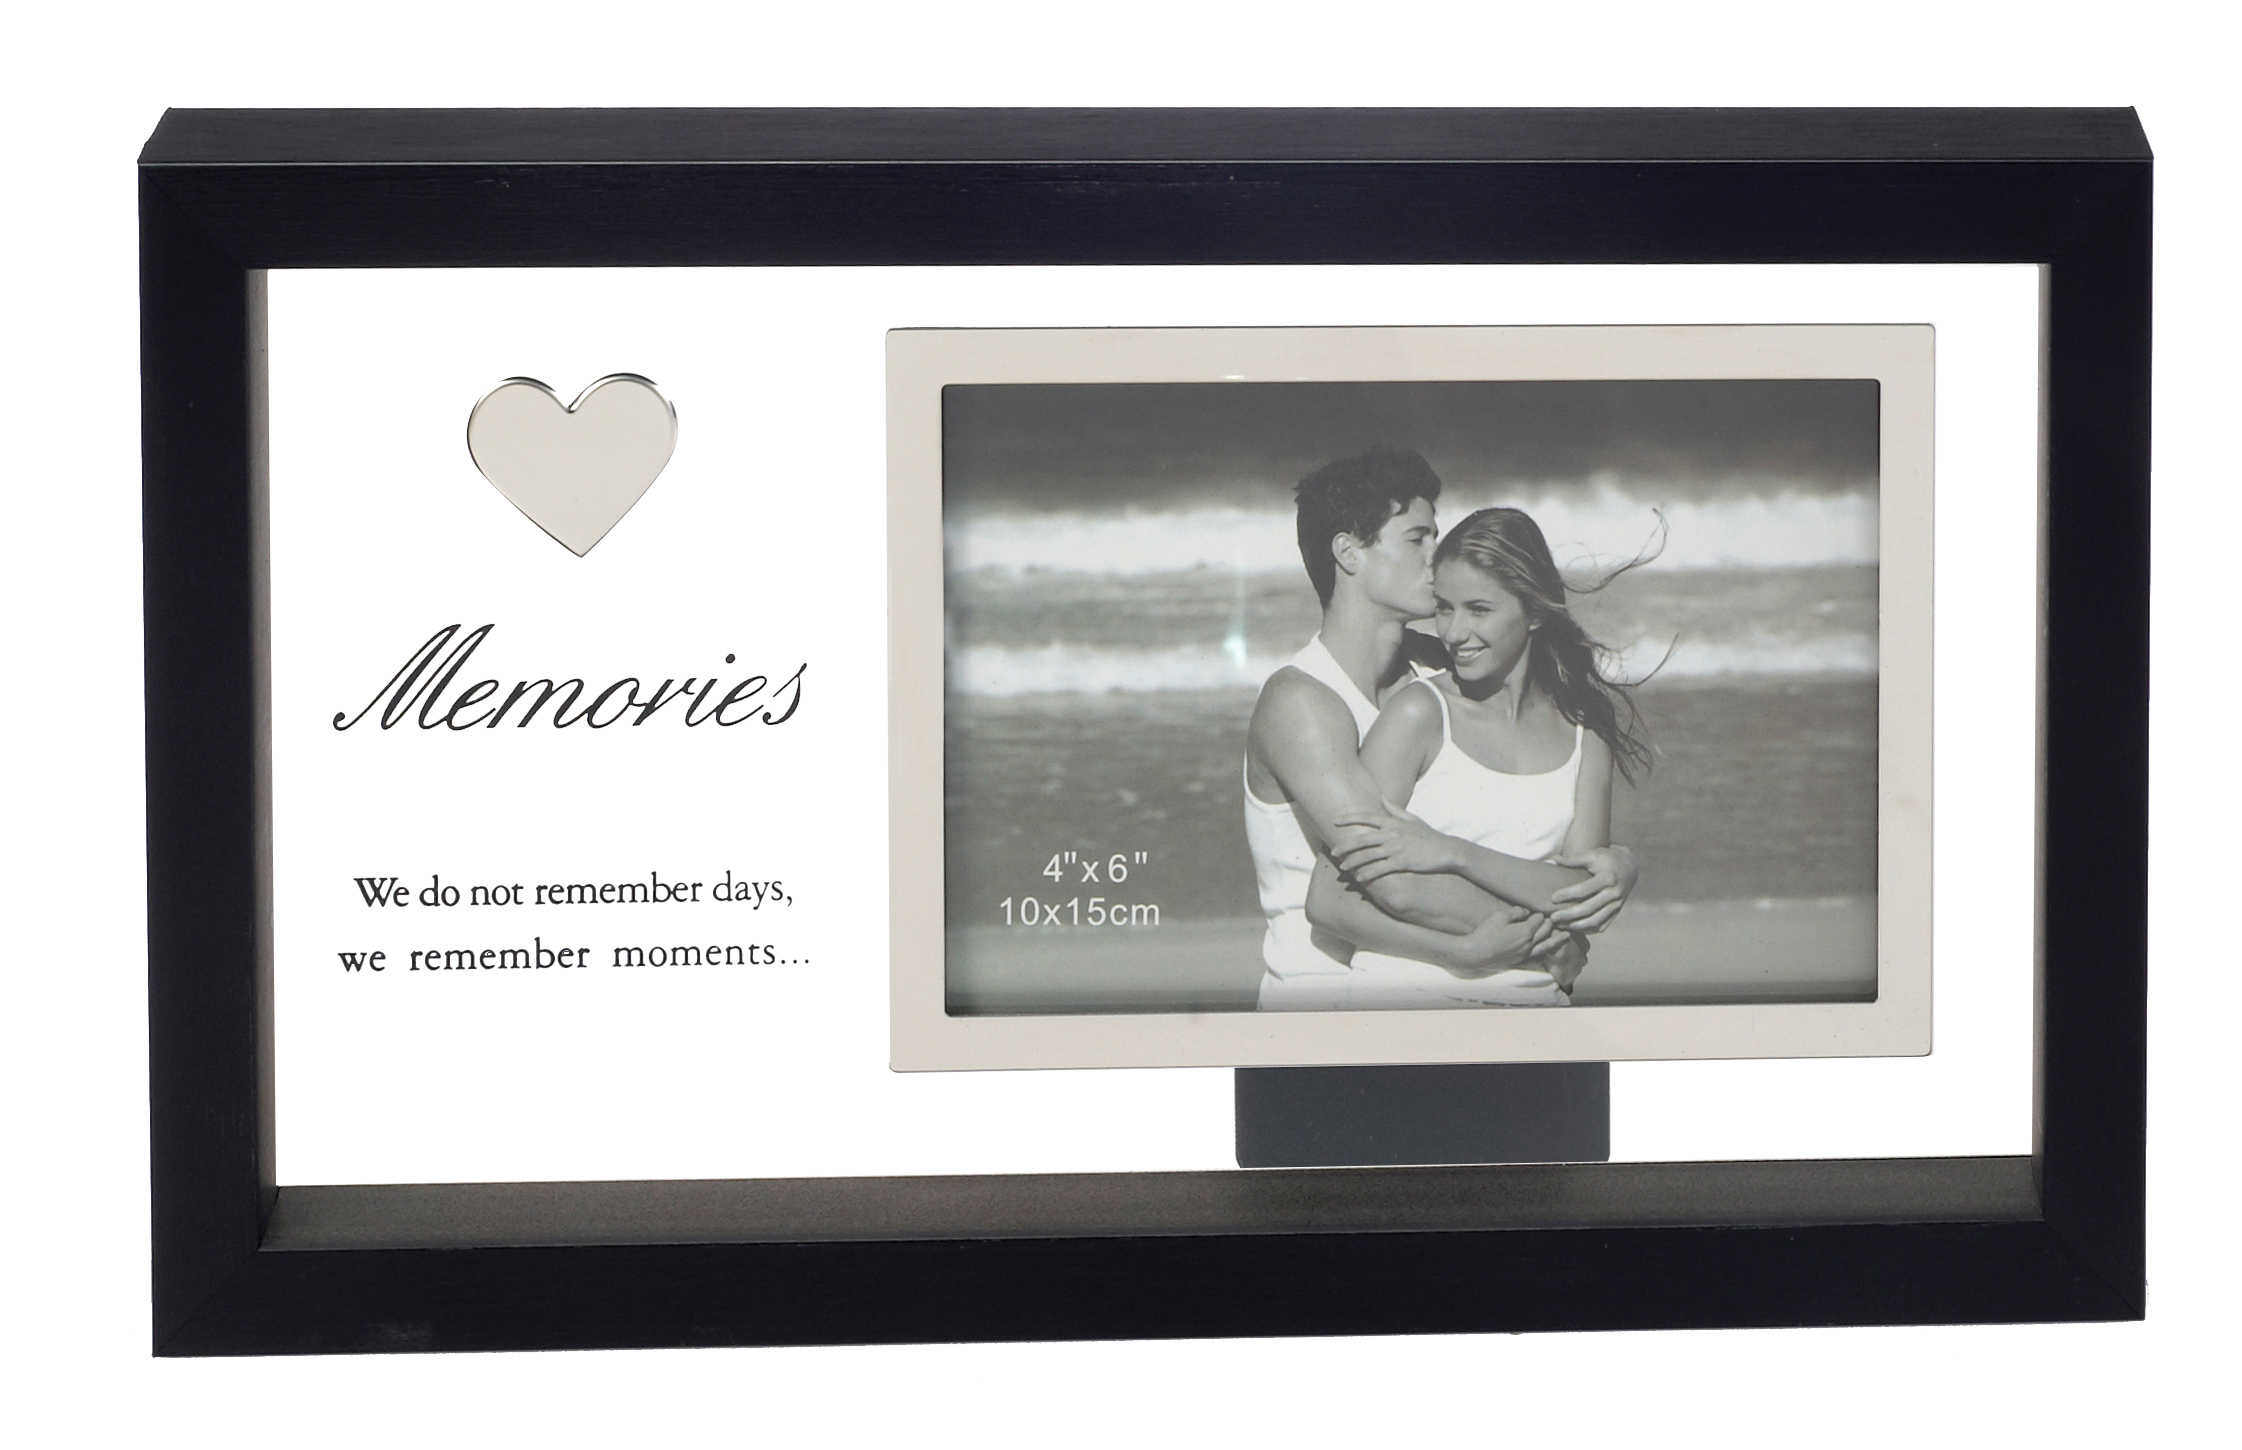 מסגרת Memories מלבנית, עץ+זכוכית,
בגודל 29x18 ס